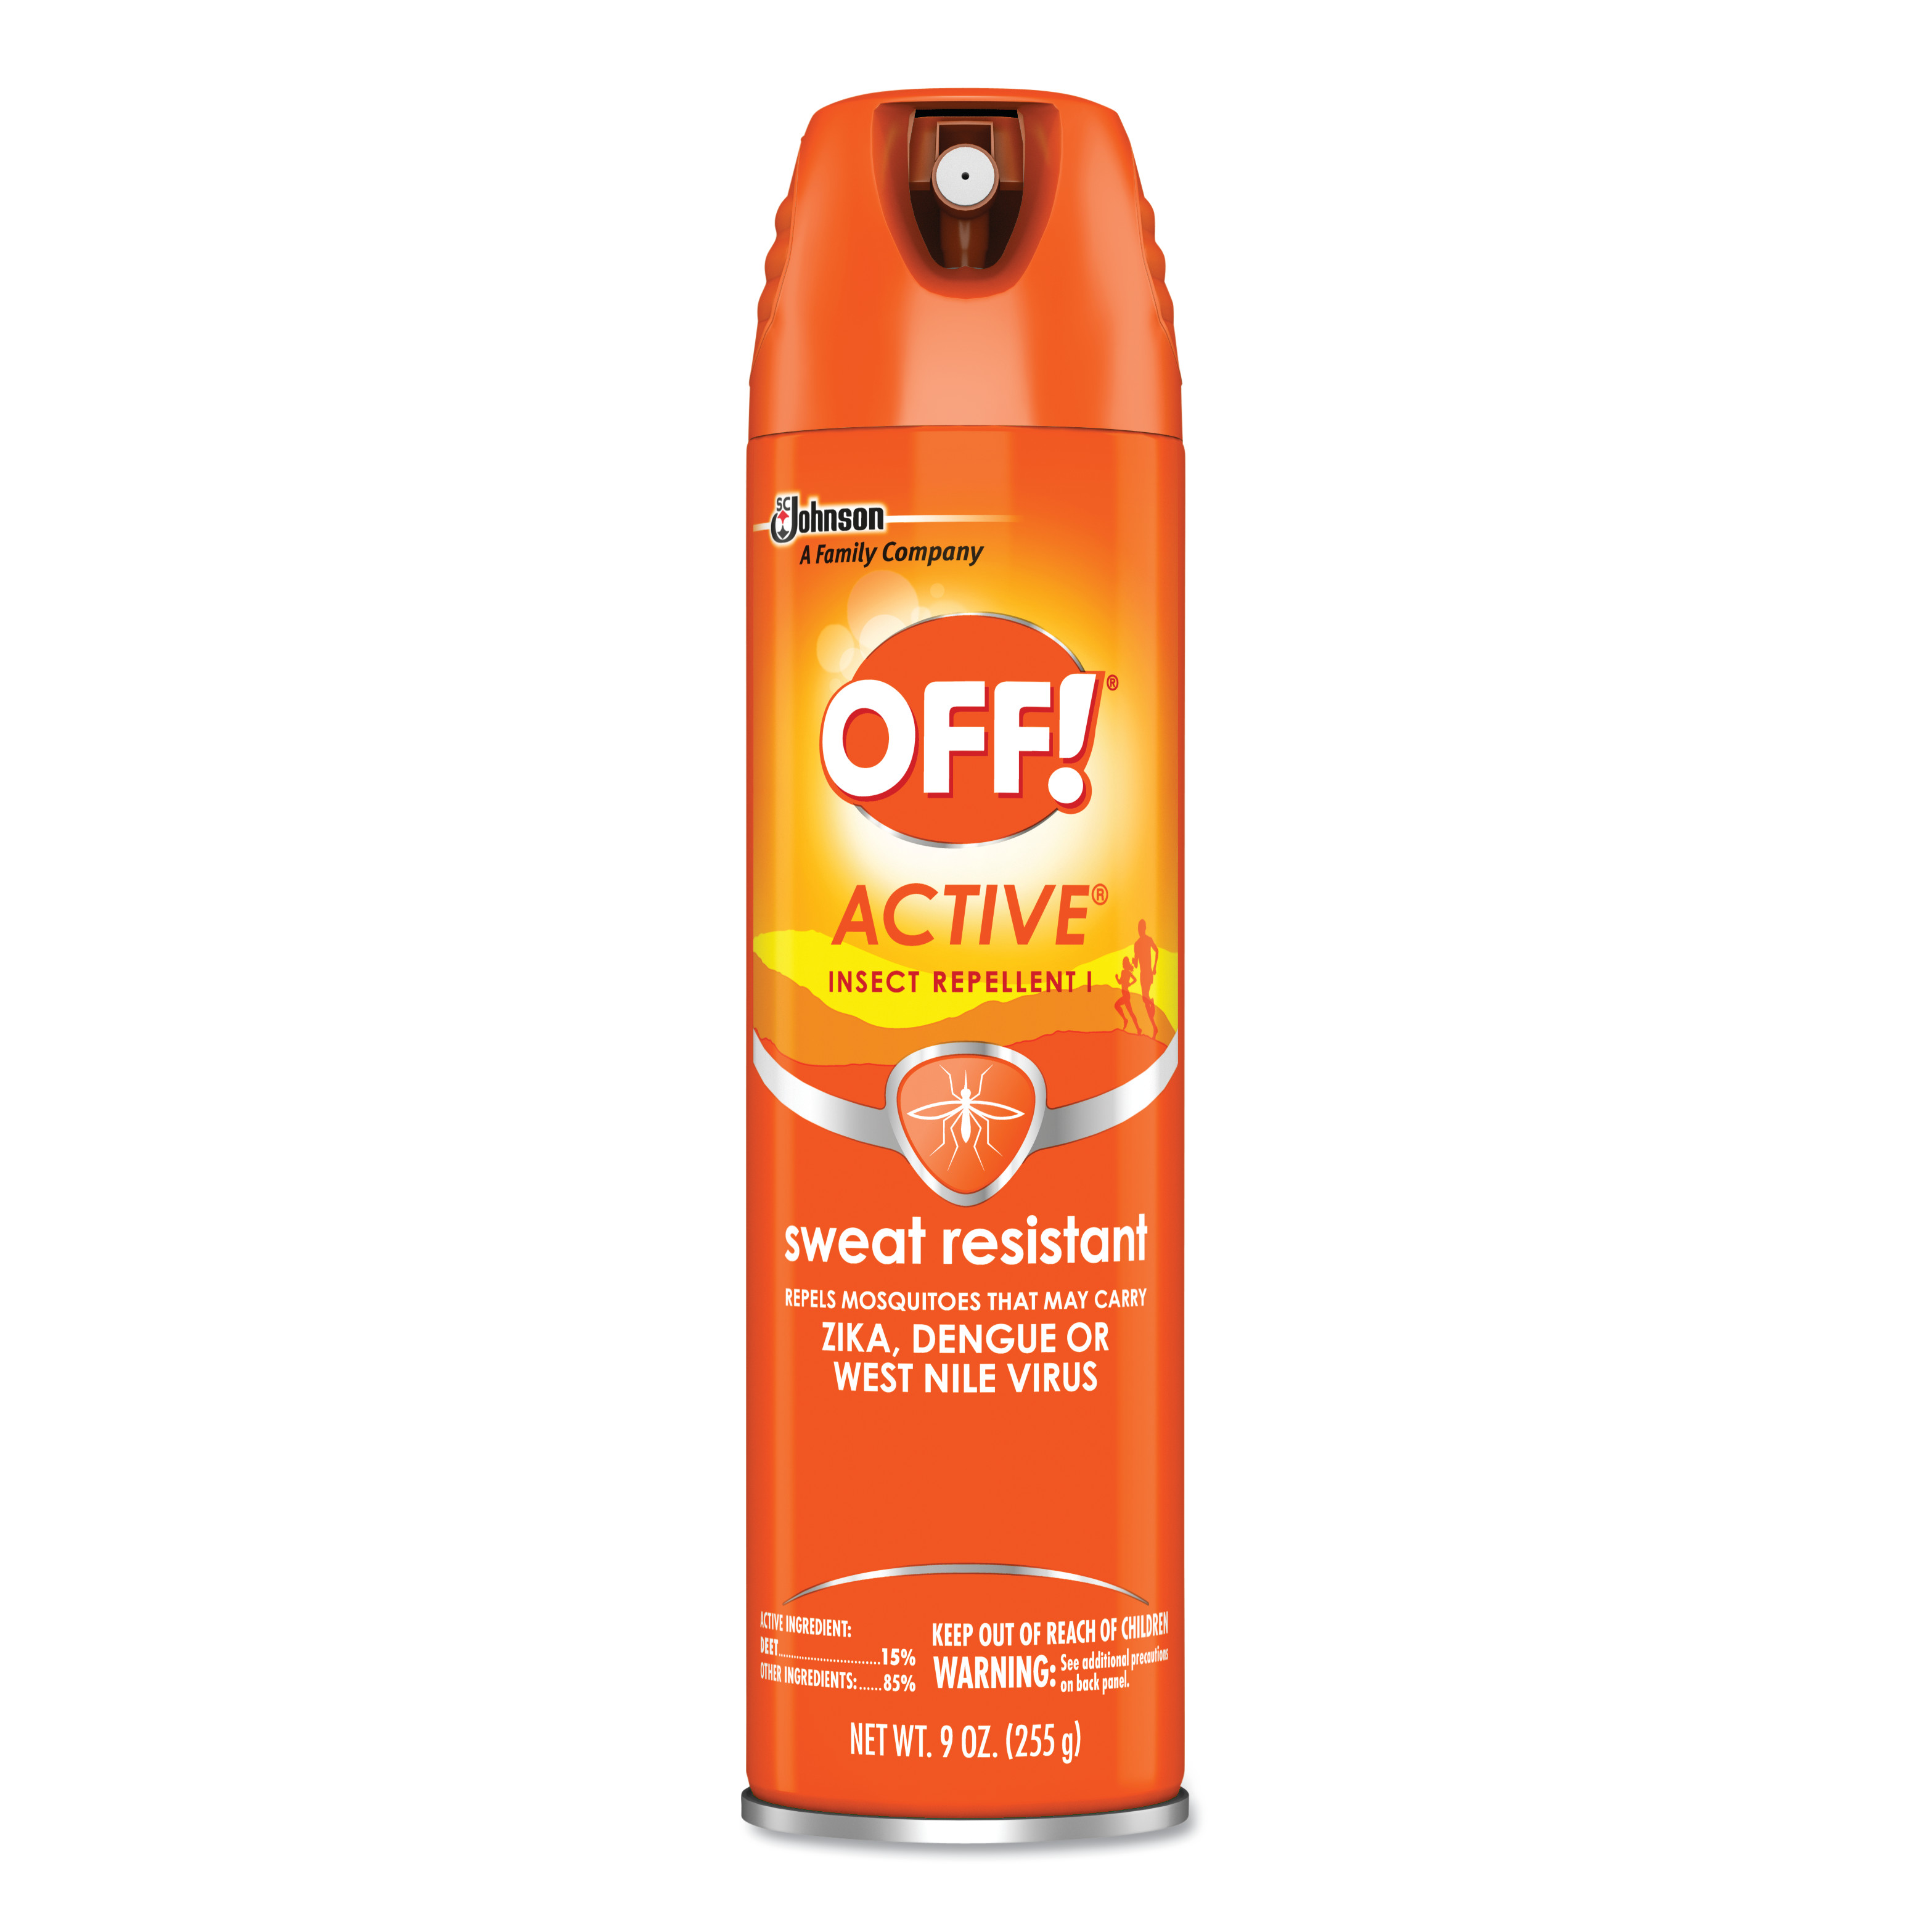  OFF! 611079 ACTIVE Insect Repellent, 6 oz Aerosol, 12/Carton (SJN611079) 